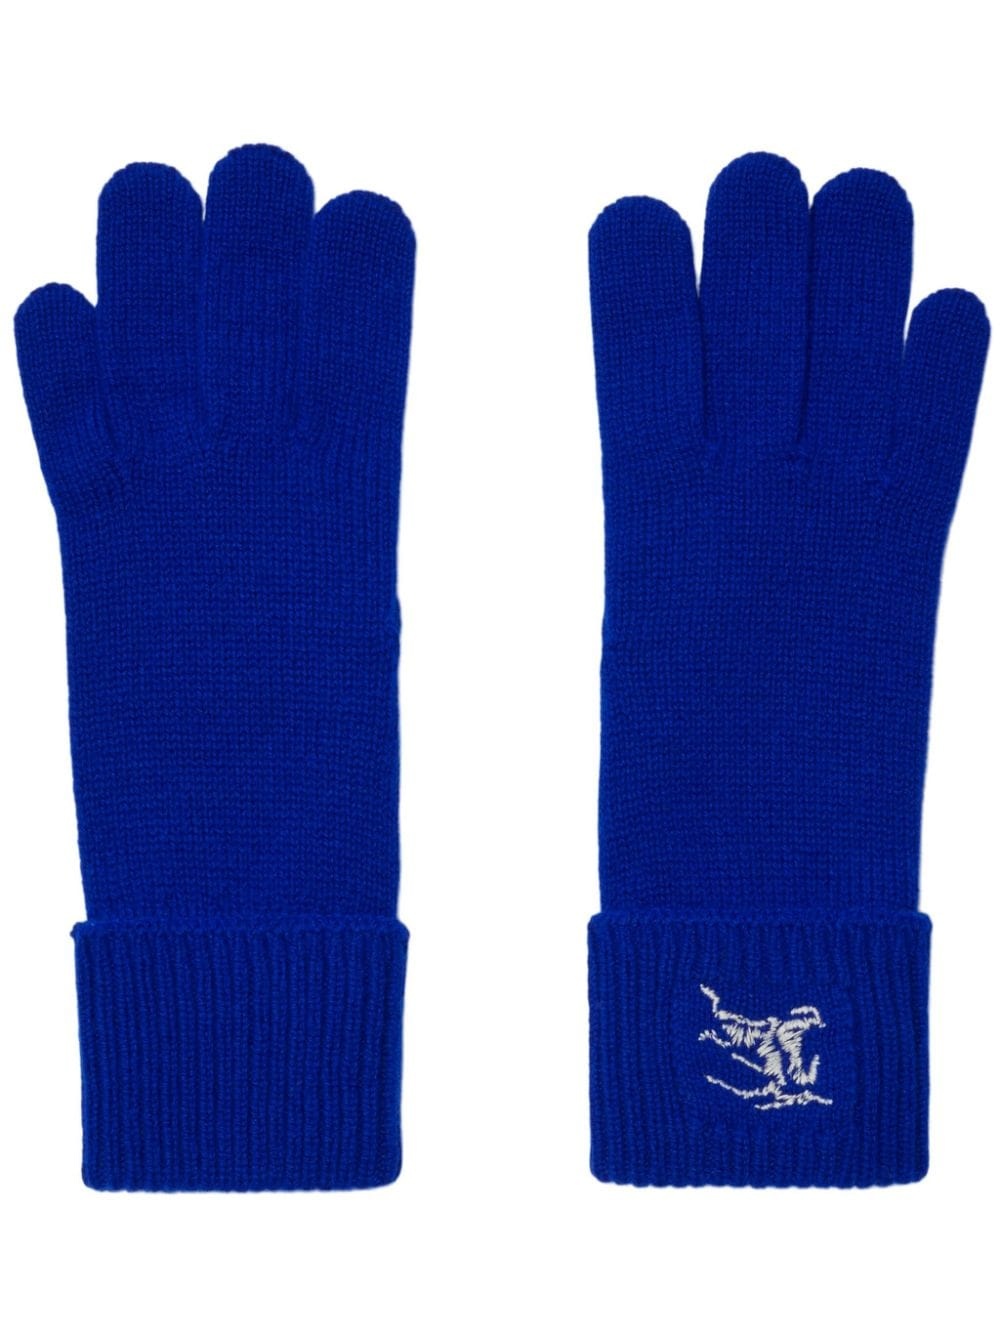 fine-knit full-finger gloves - 1